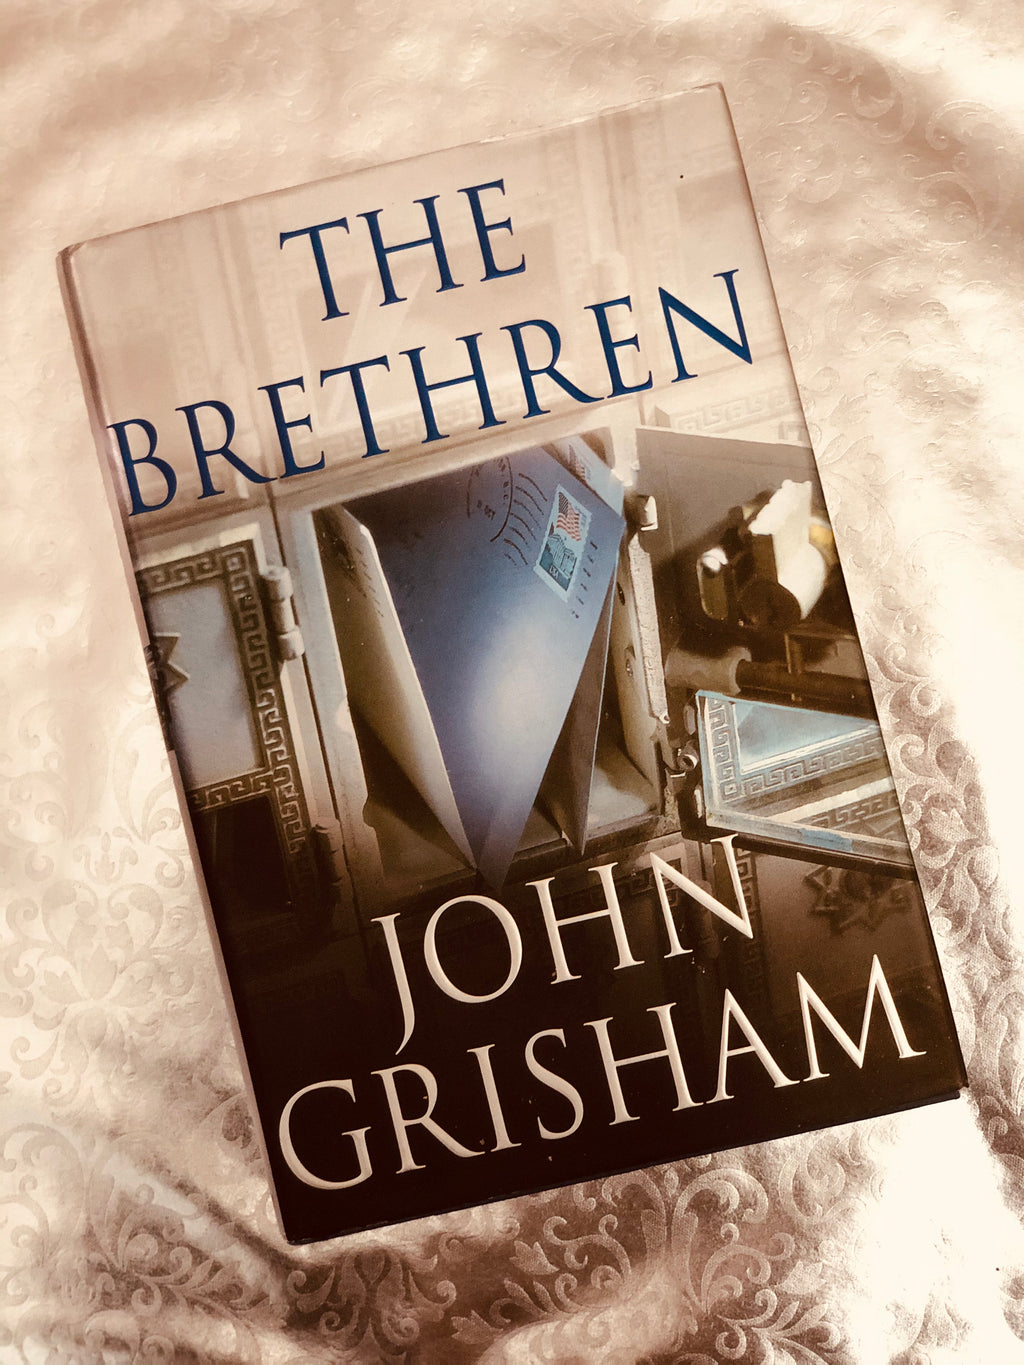 The Brethren- By John Grisham